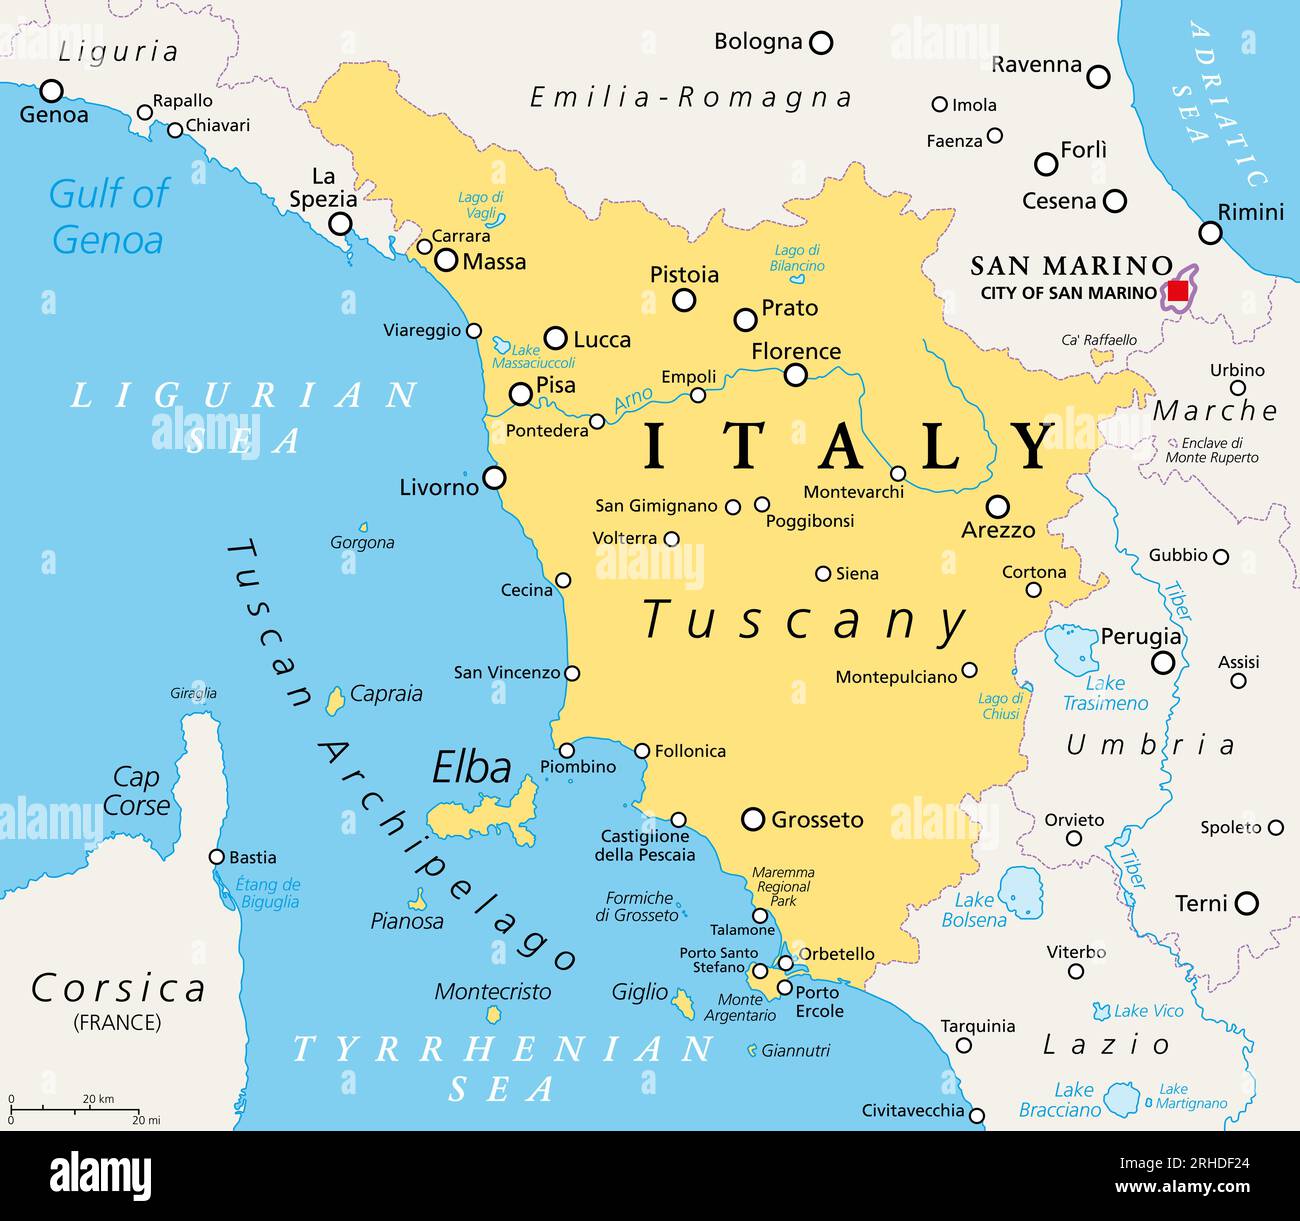 Toscana, regione dell'Italia centrale, mappa politica con molti luoghi turistici popolari come Firenze, Castiglione della Pescaia, Pisa, Grosseto e Siena. Foto Stock